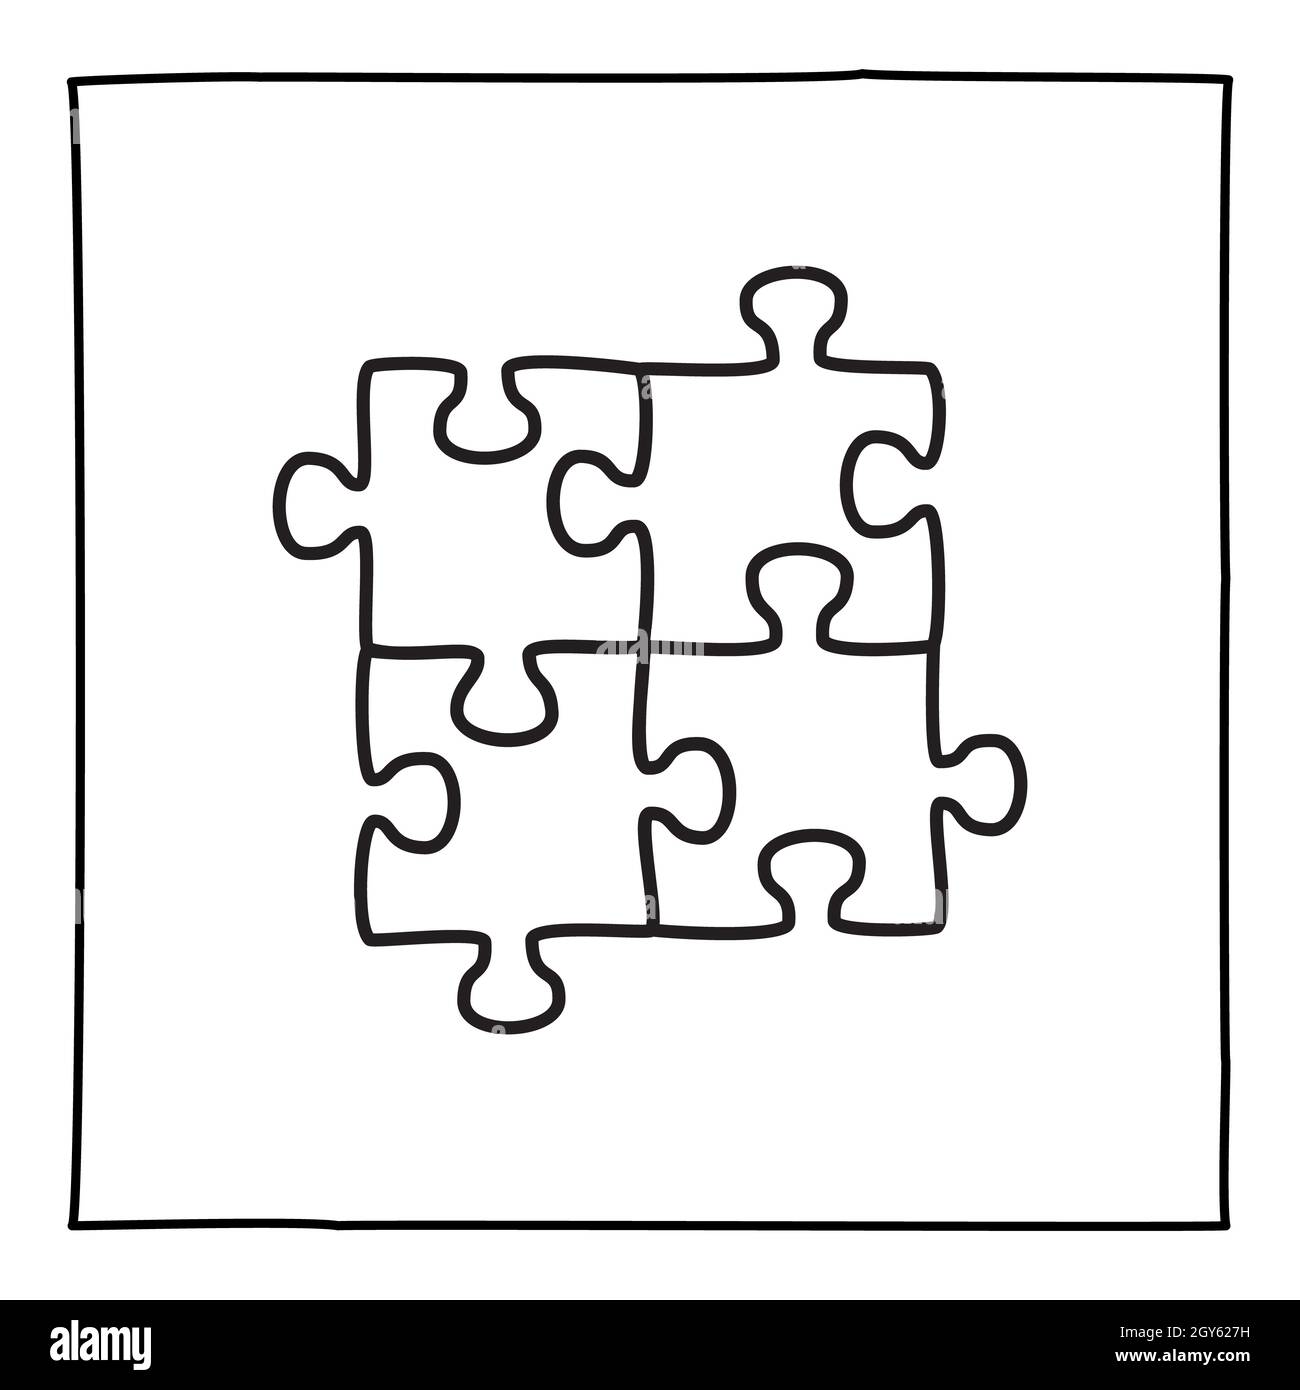 Icona o logo del puzzle Doodle, disegnati a mano con una sottile linea nera. Isolato su sfondo bianco. Illustrazione vettoriale Foto Stock